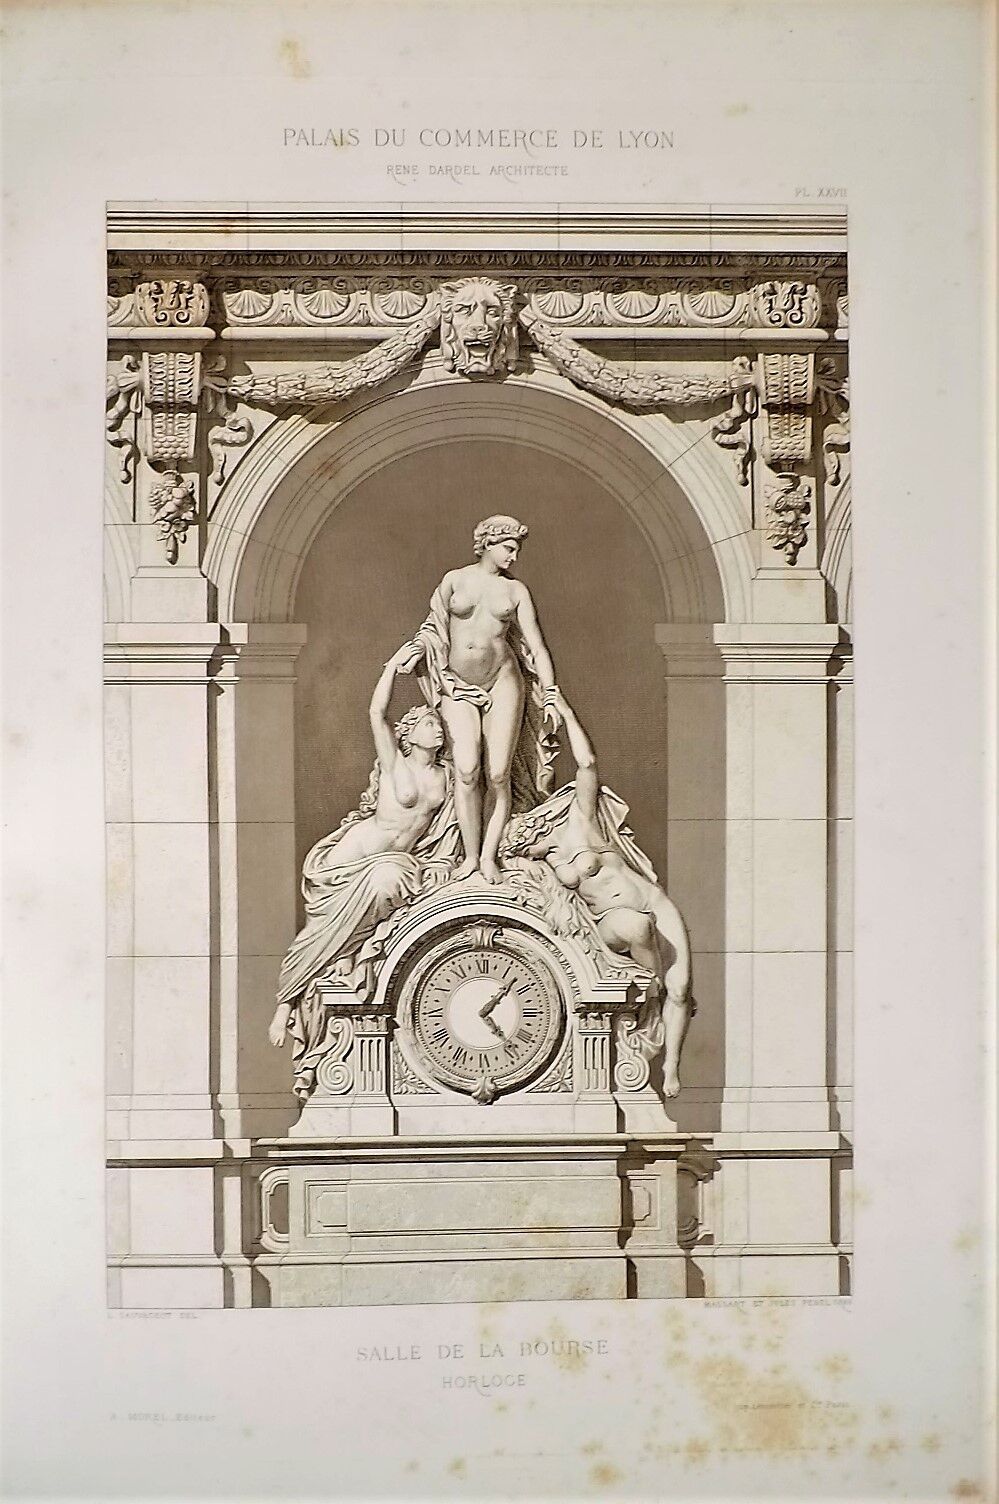 Null DARDEL (René).里昂商业宫专著。巴黎，莫雷尔（路易斯-佩林出版社），1868年。夹页，出版商的黑色珍珠岩。
	与前一期相同。该副本附有佩兰&hellip;